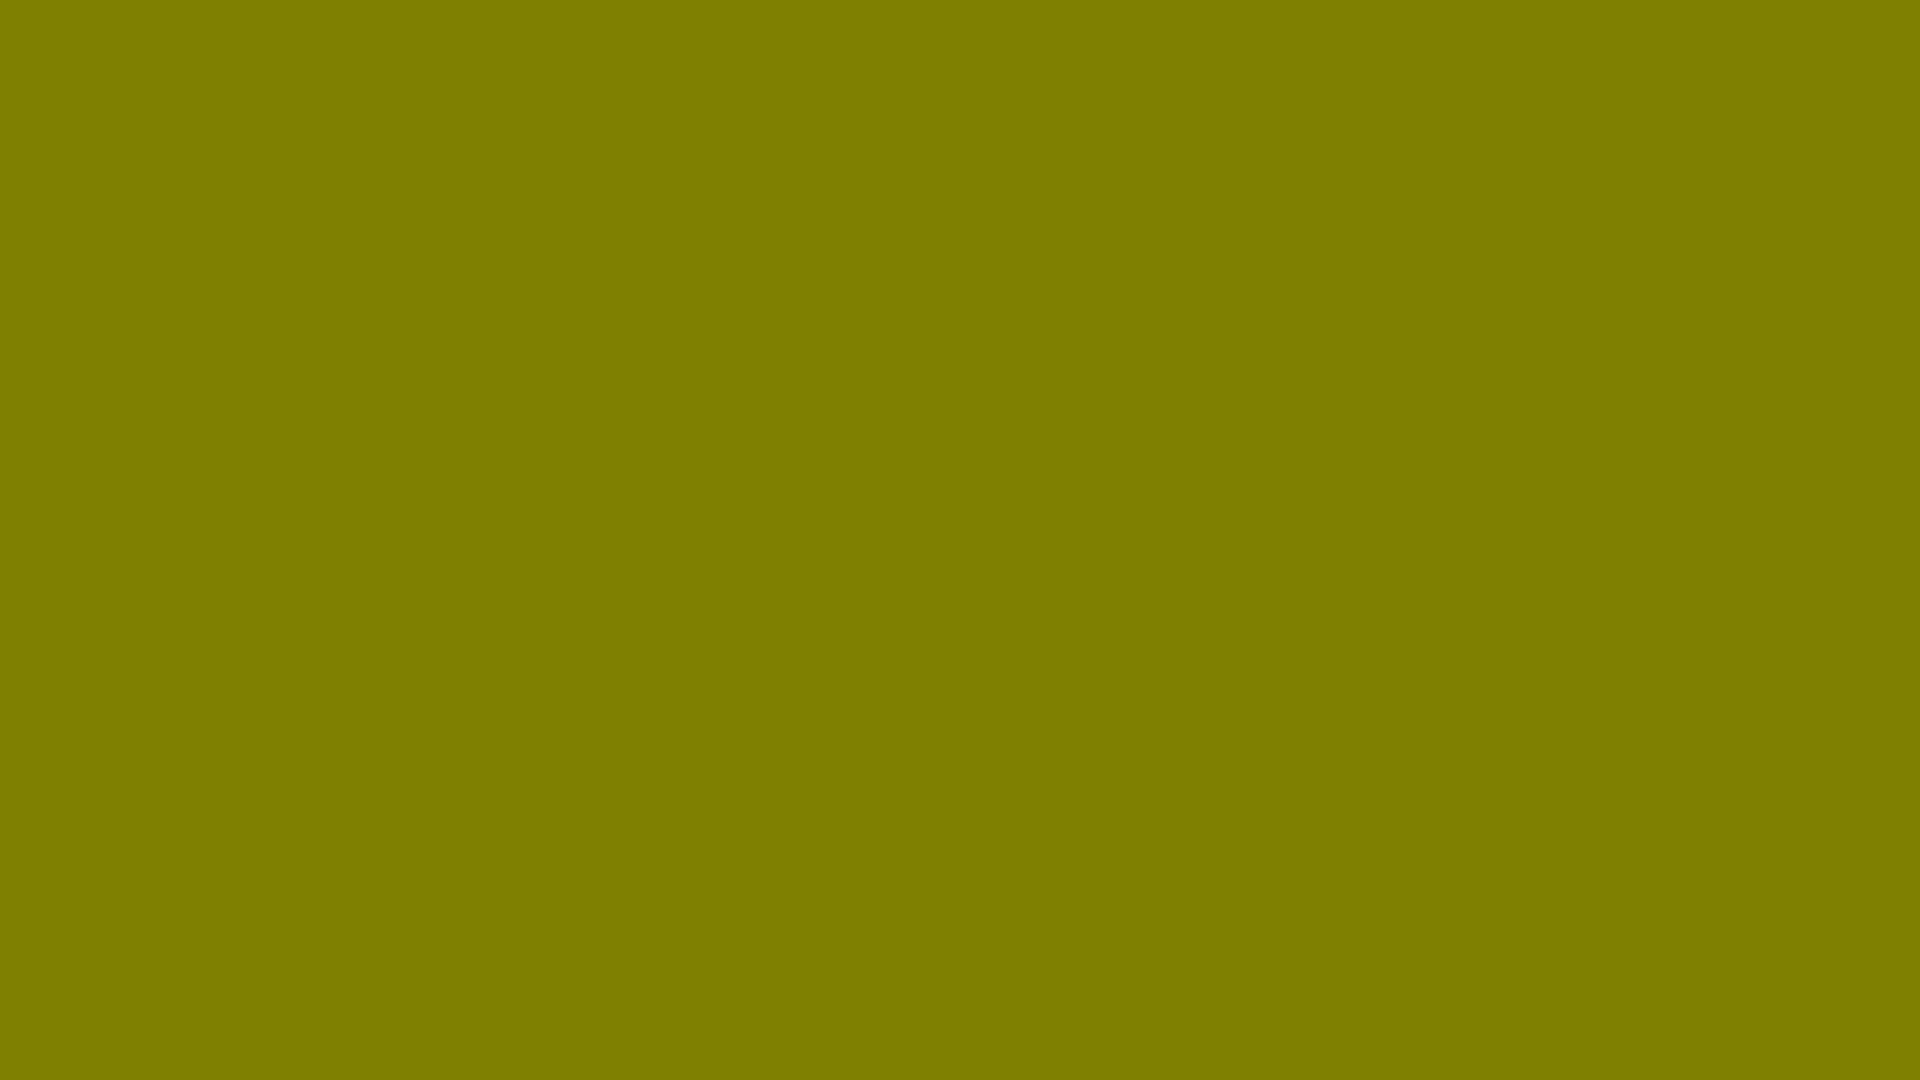 Plain Desktop Olive Green Background